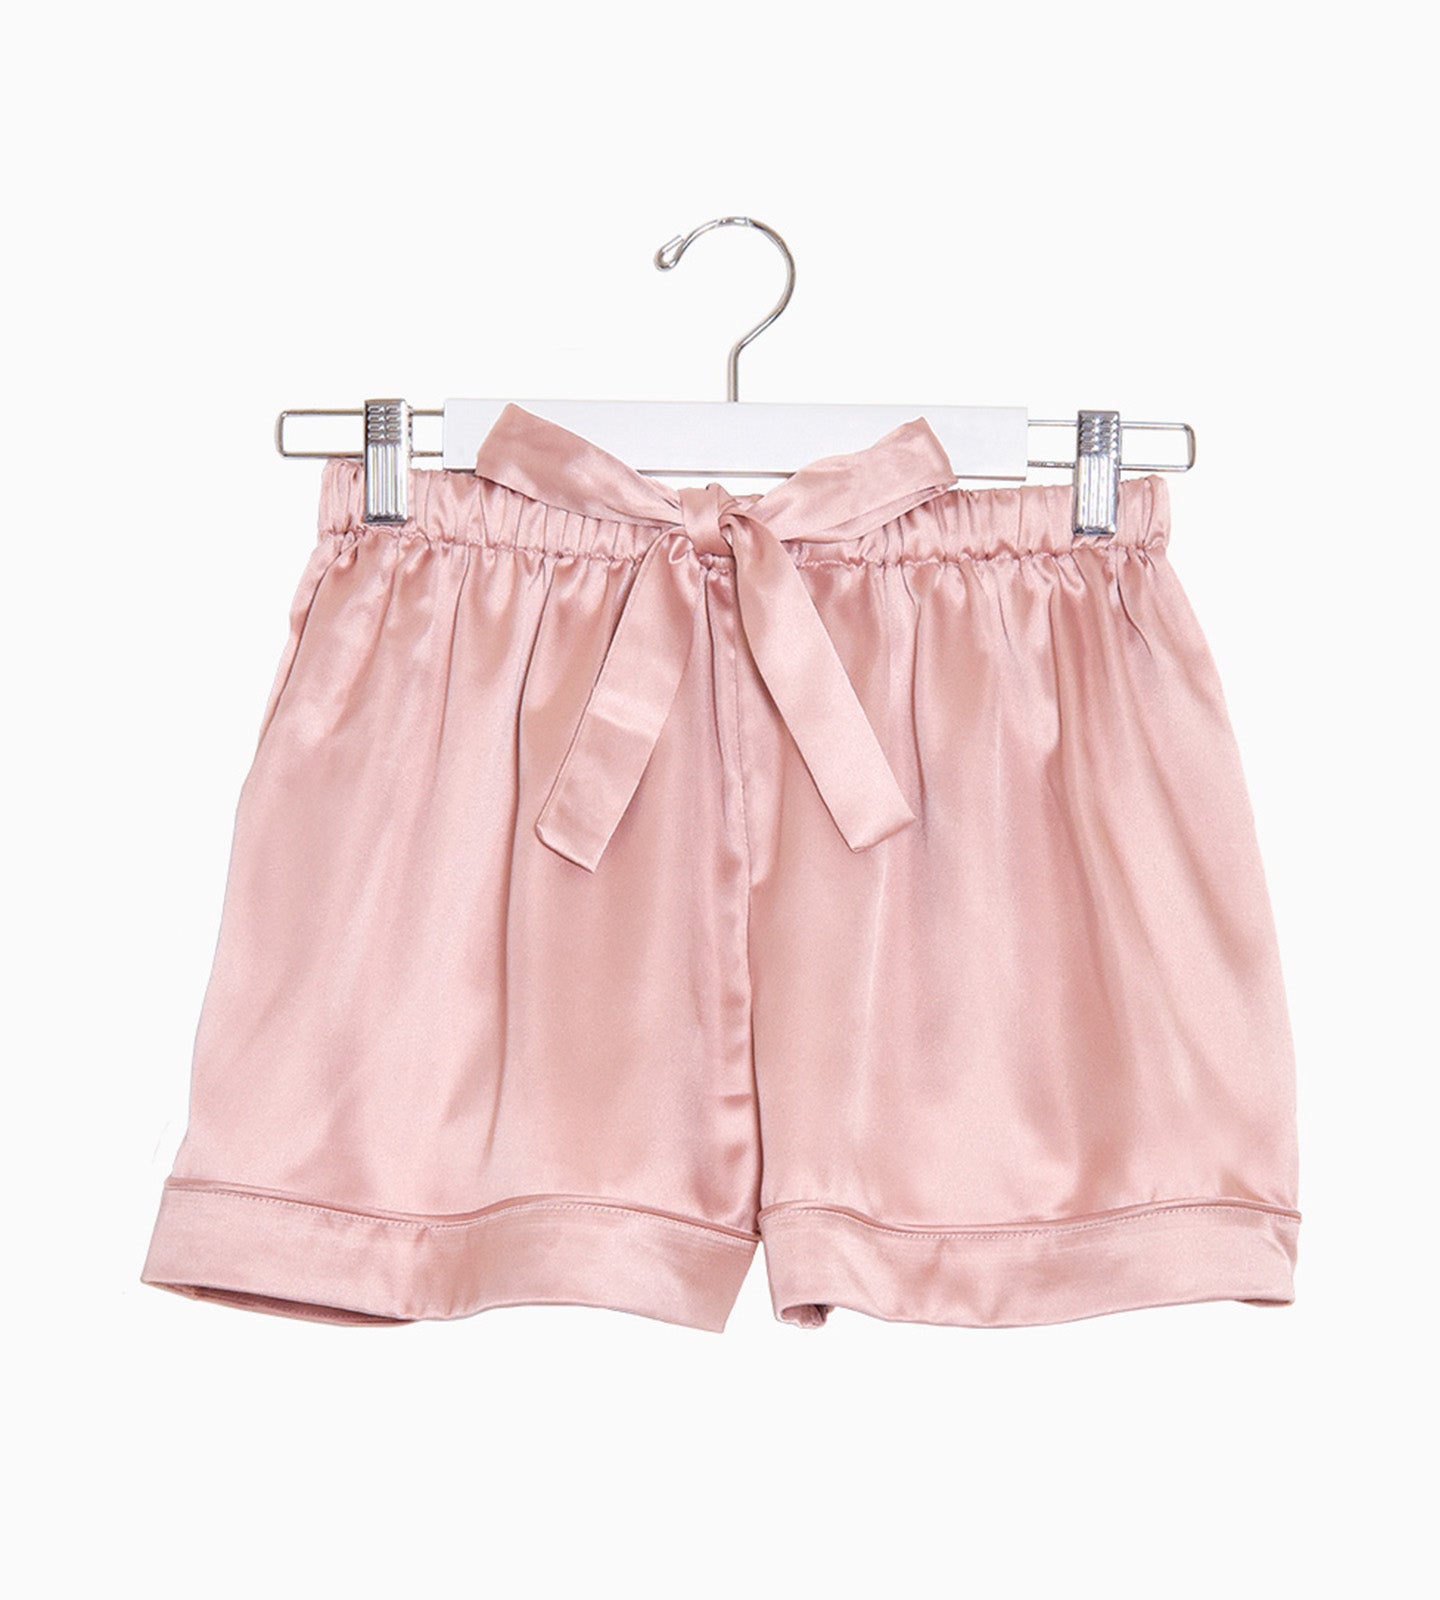 An image of the Luxury Rose Pyjama shorts.